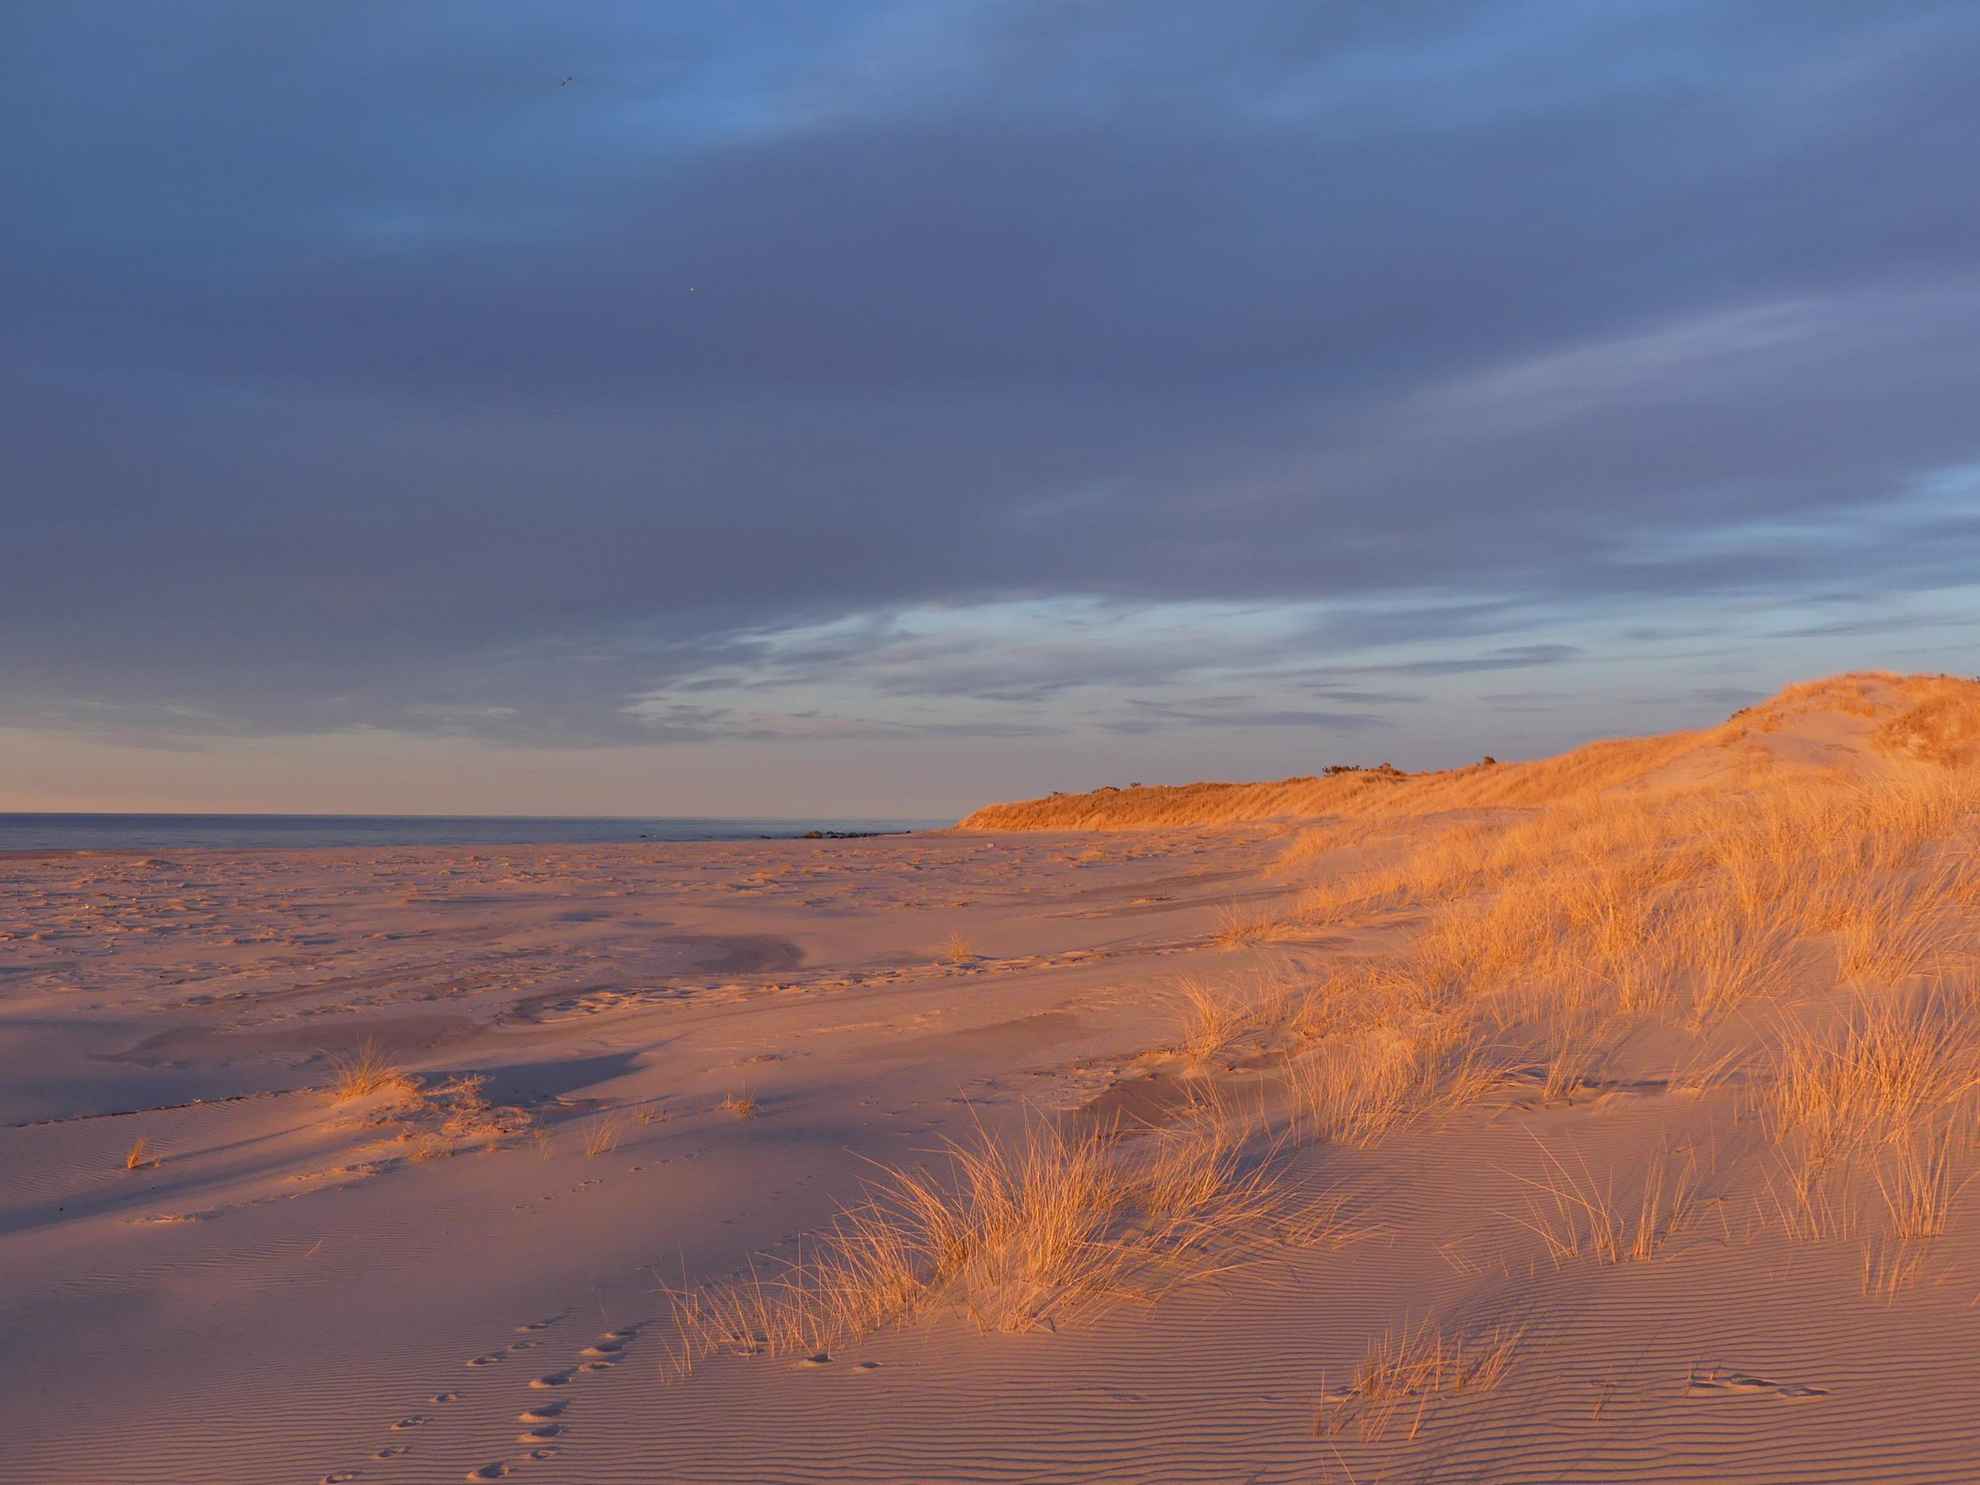 Une plage avec des dunes de sable et une herbe dorée sur la partie droite. On voit la mer au loin.